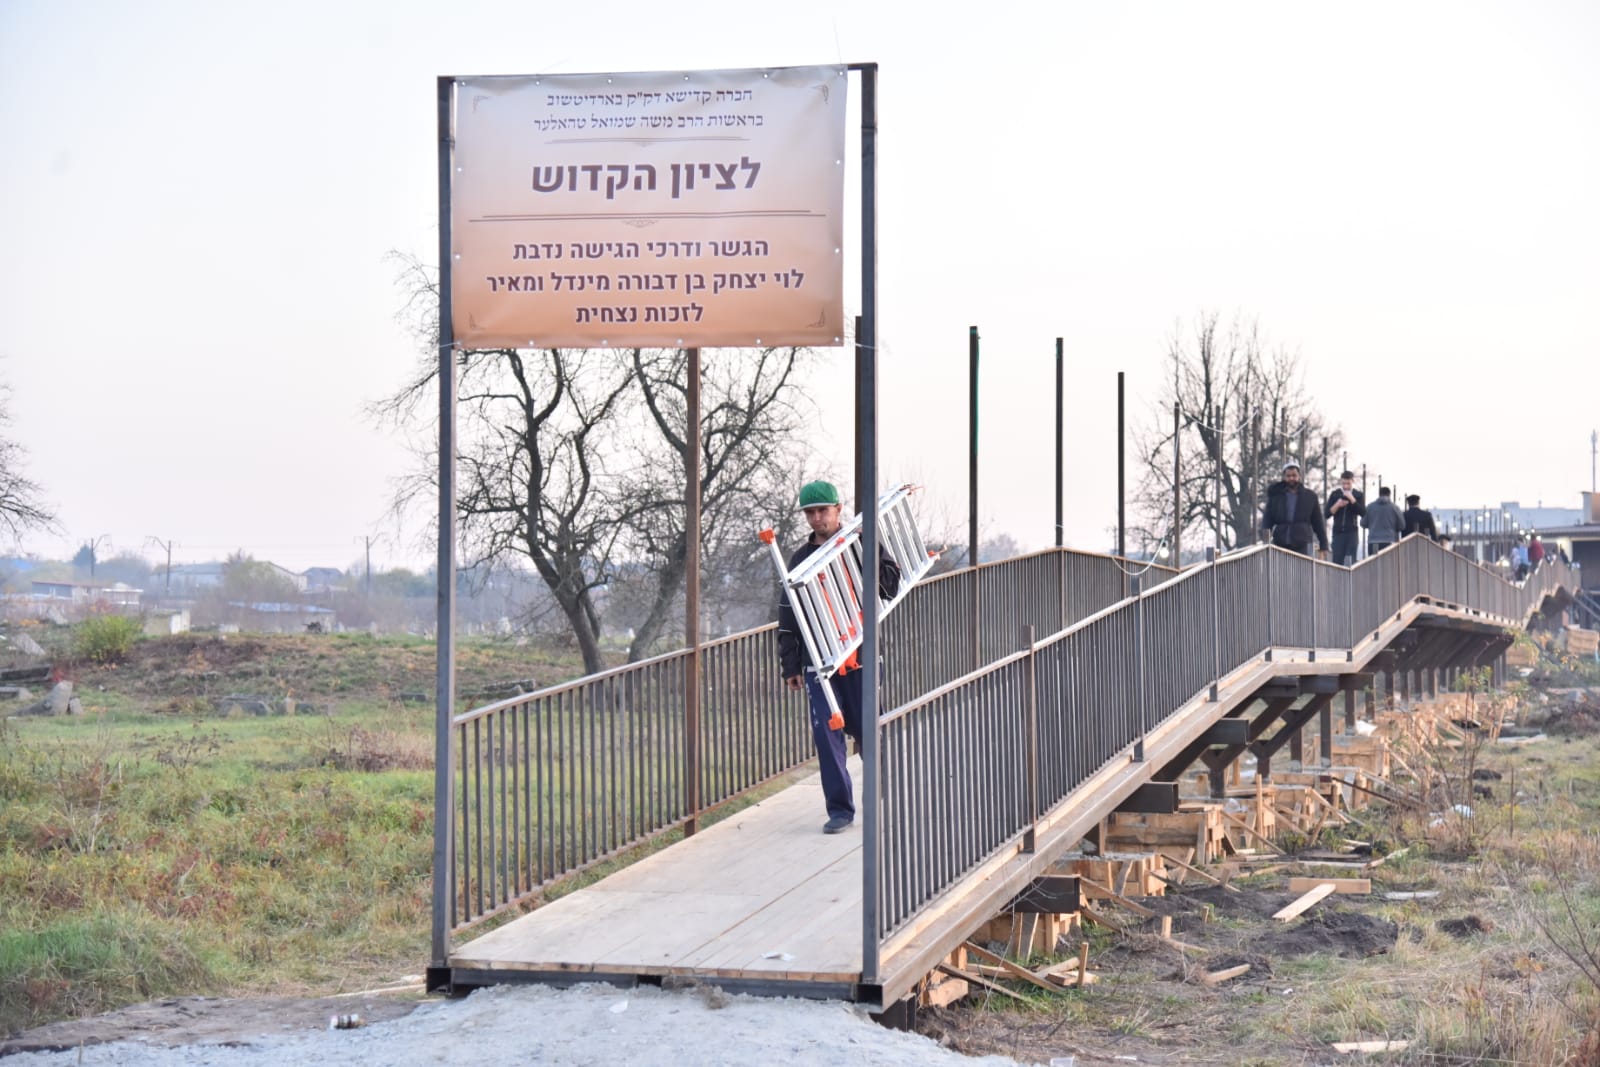 הגשר שבנה הרב טאהלר מהצד השני כדי שלא ידרכו על הקברים (צילום: באדיבות מוסדות הרב טהלר, ברדיטשוב)